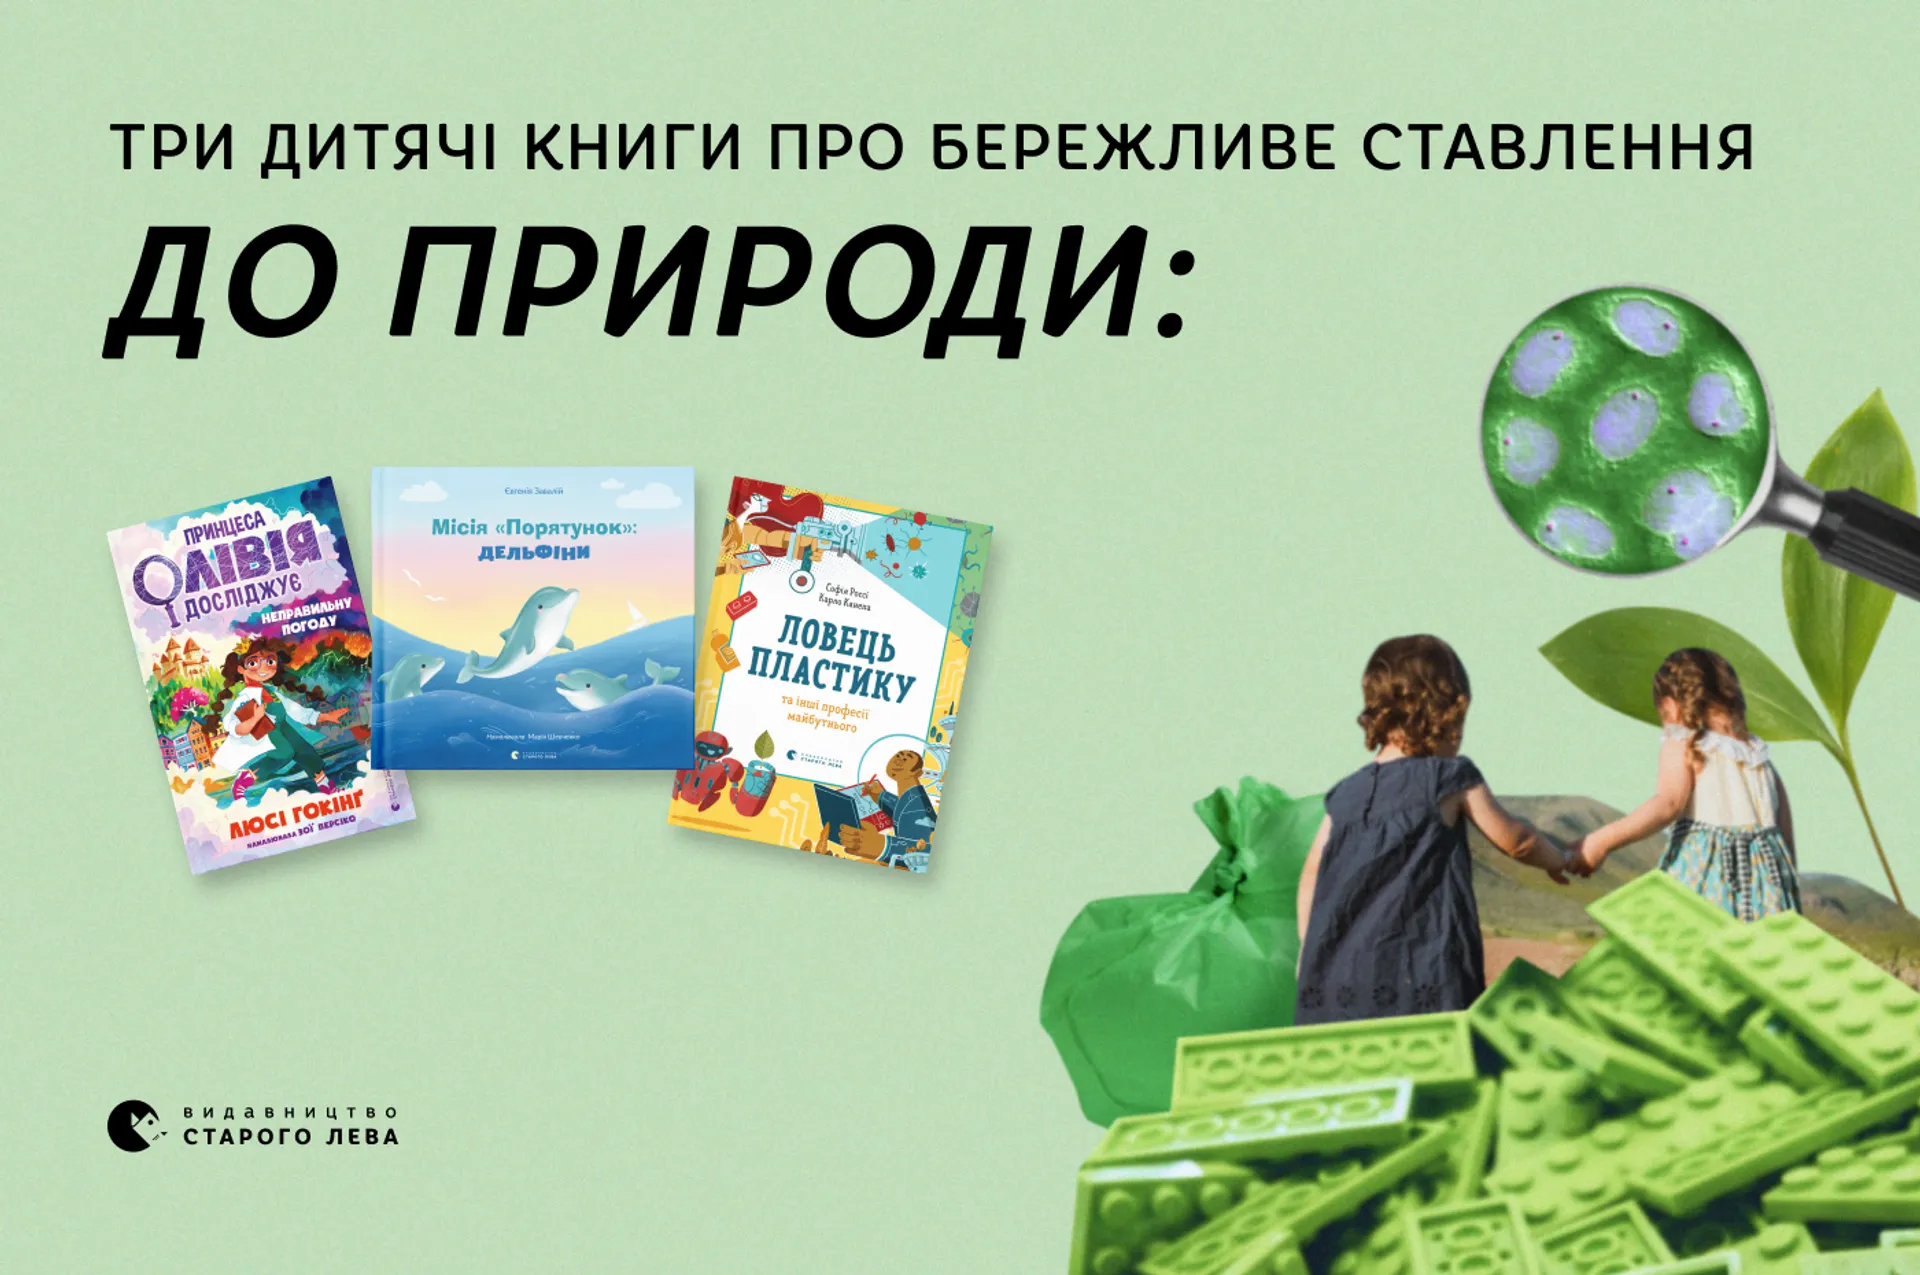 Три дитячі книги про бережливе ставлення до природи. Чому їх варто прочитати?